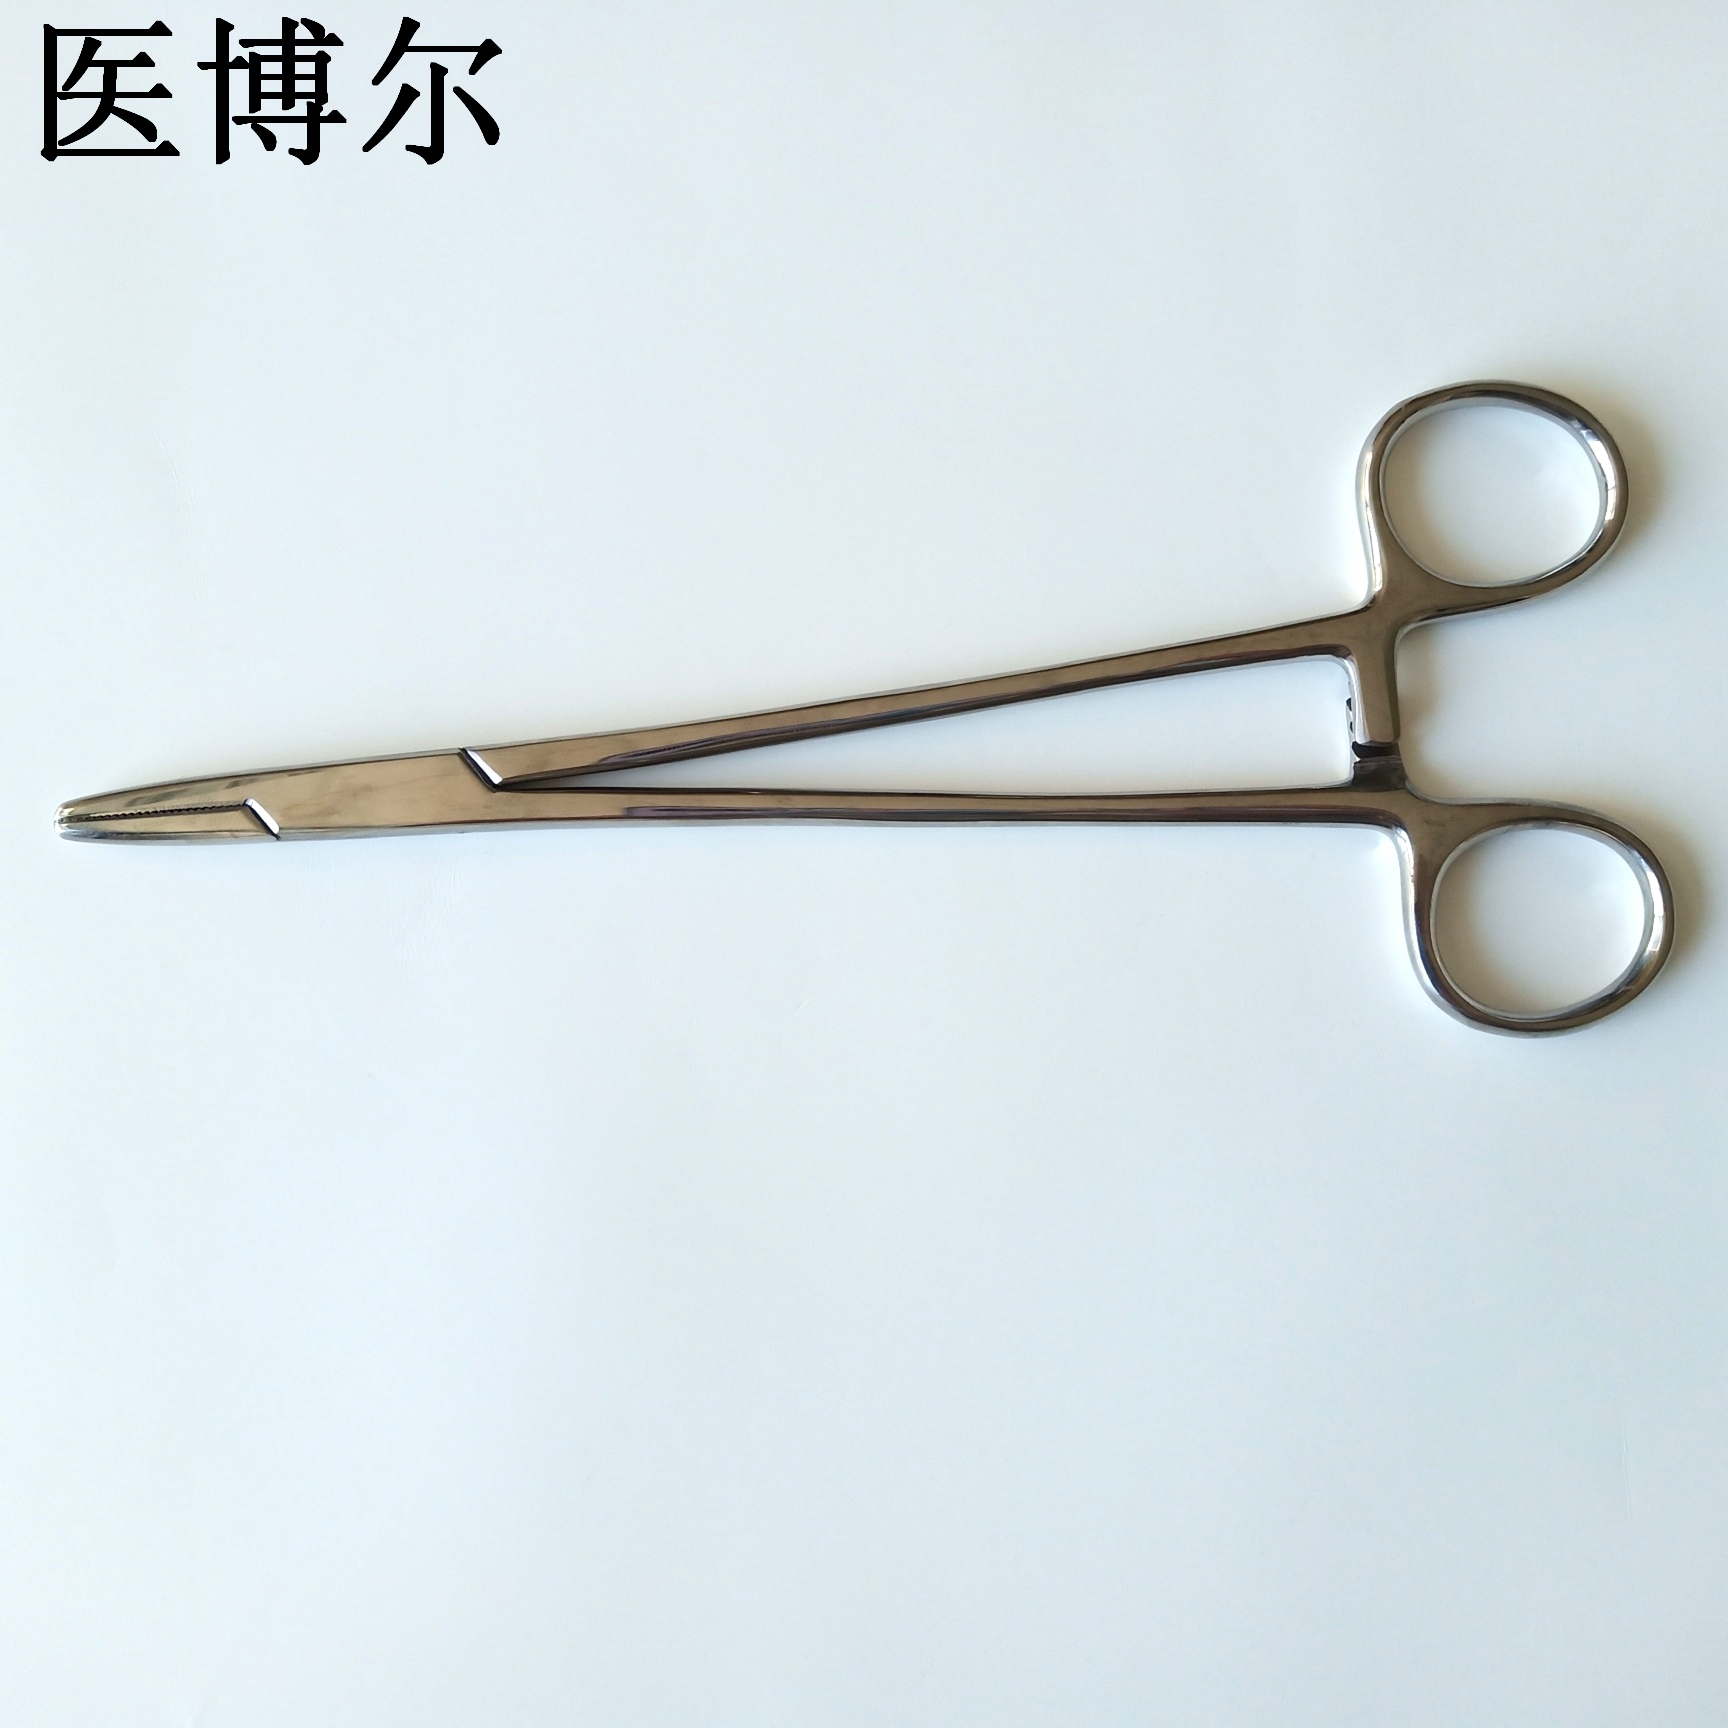 18cm粗针持针器 (3)_看图王.jpg